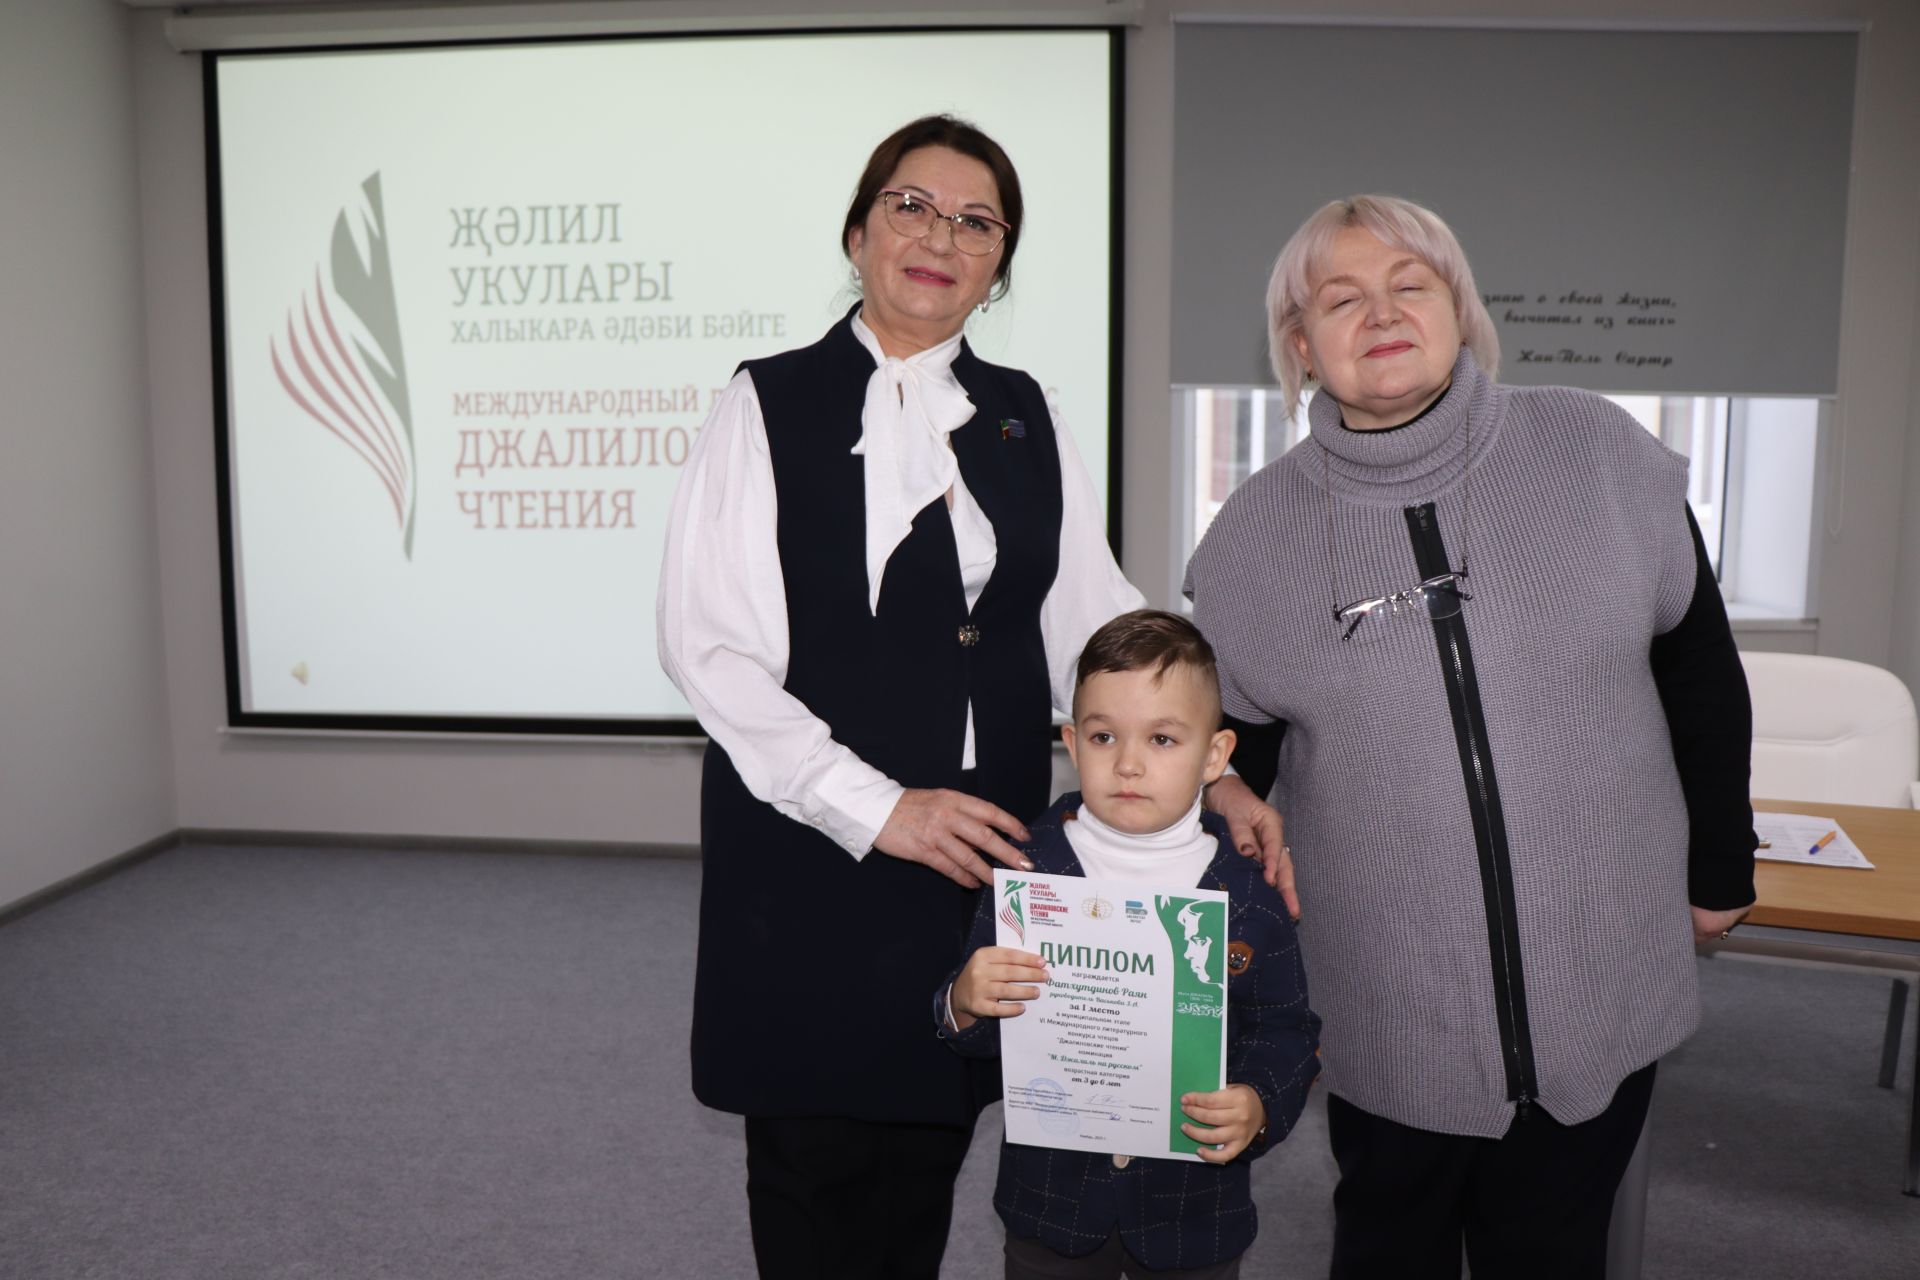 В Нурлате наградили победителей муниципального этапа конкурса чтецов «Джалиловские чтения»